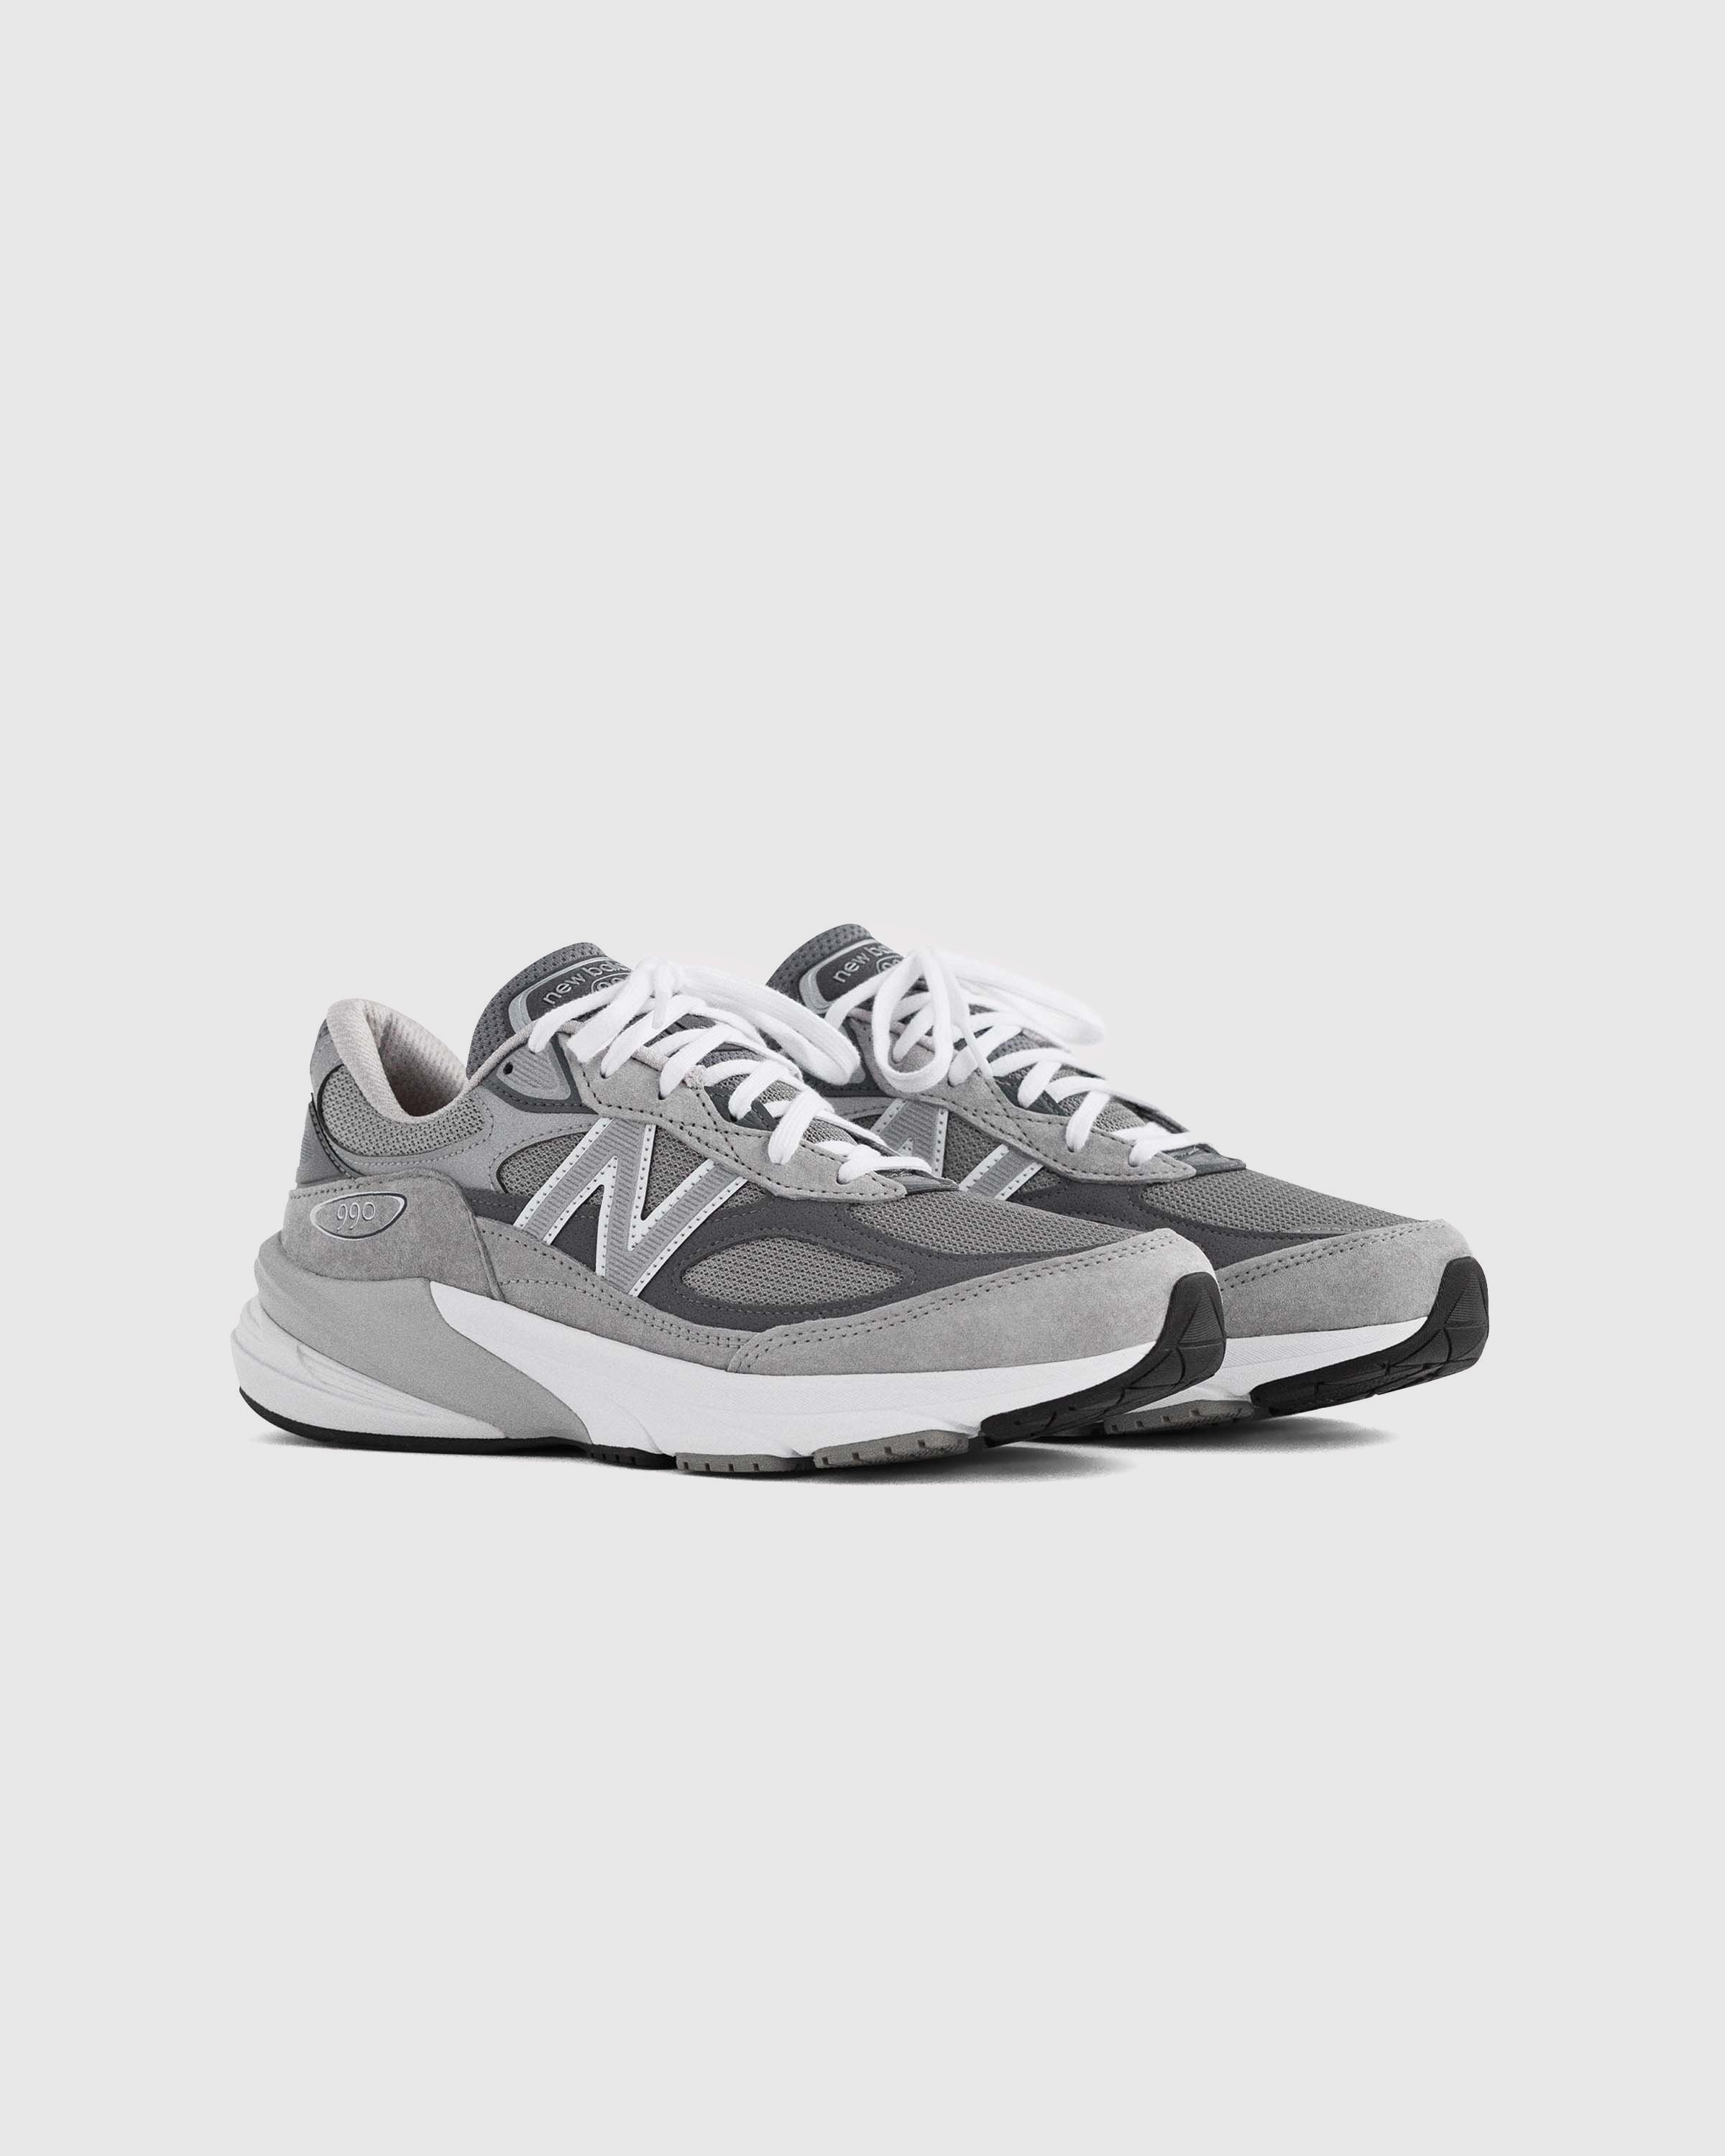 New Balance – M 990v6 Cool Gray | Highsnobiety Shop